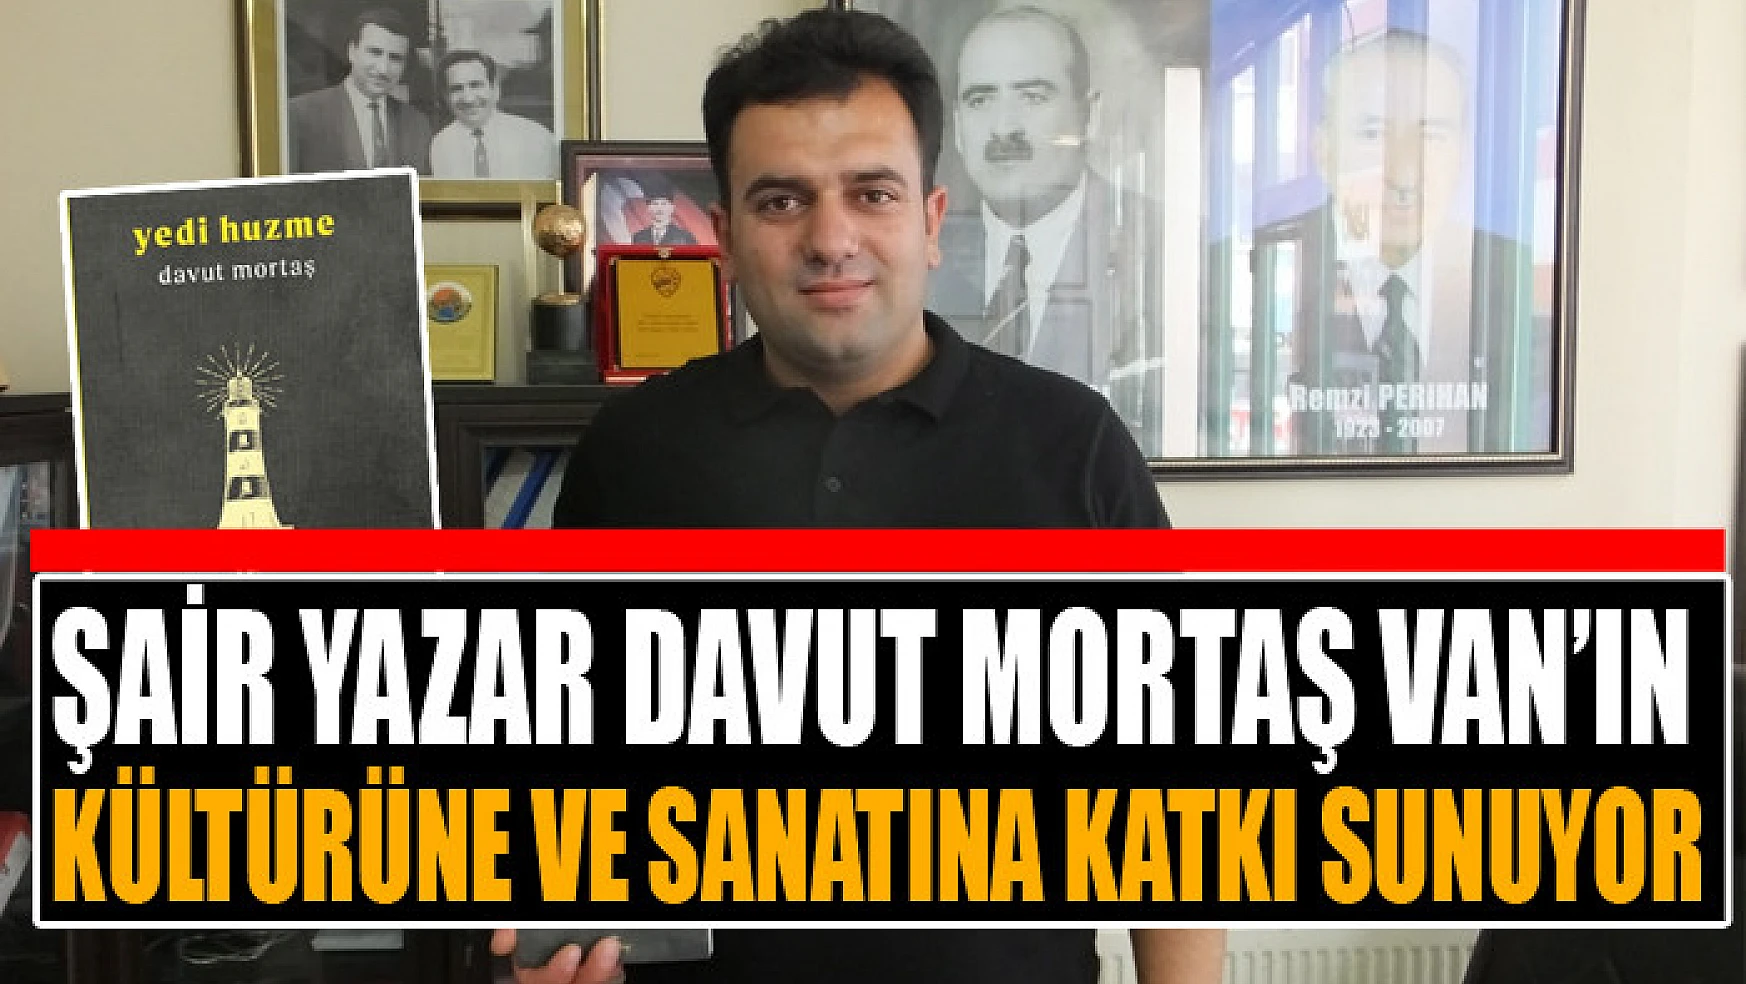 Şair yazar Davut Mortaş Van'ın kültürüne ve sanatına katkı sunuyor